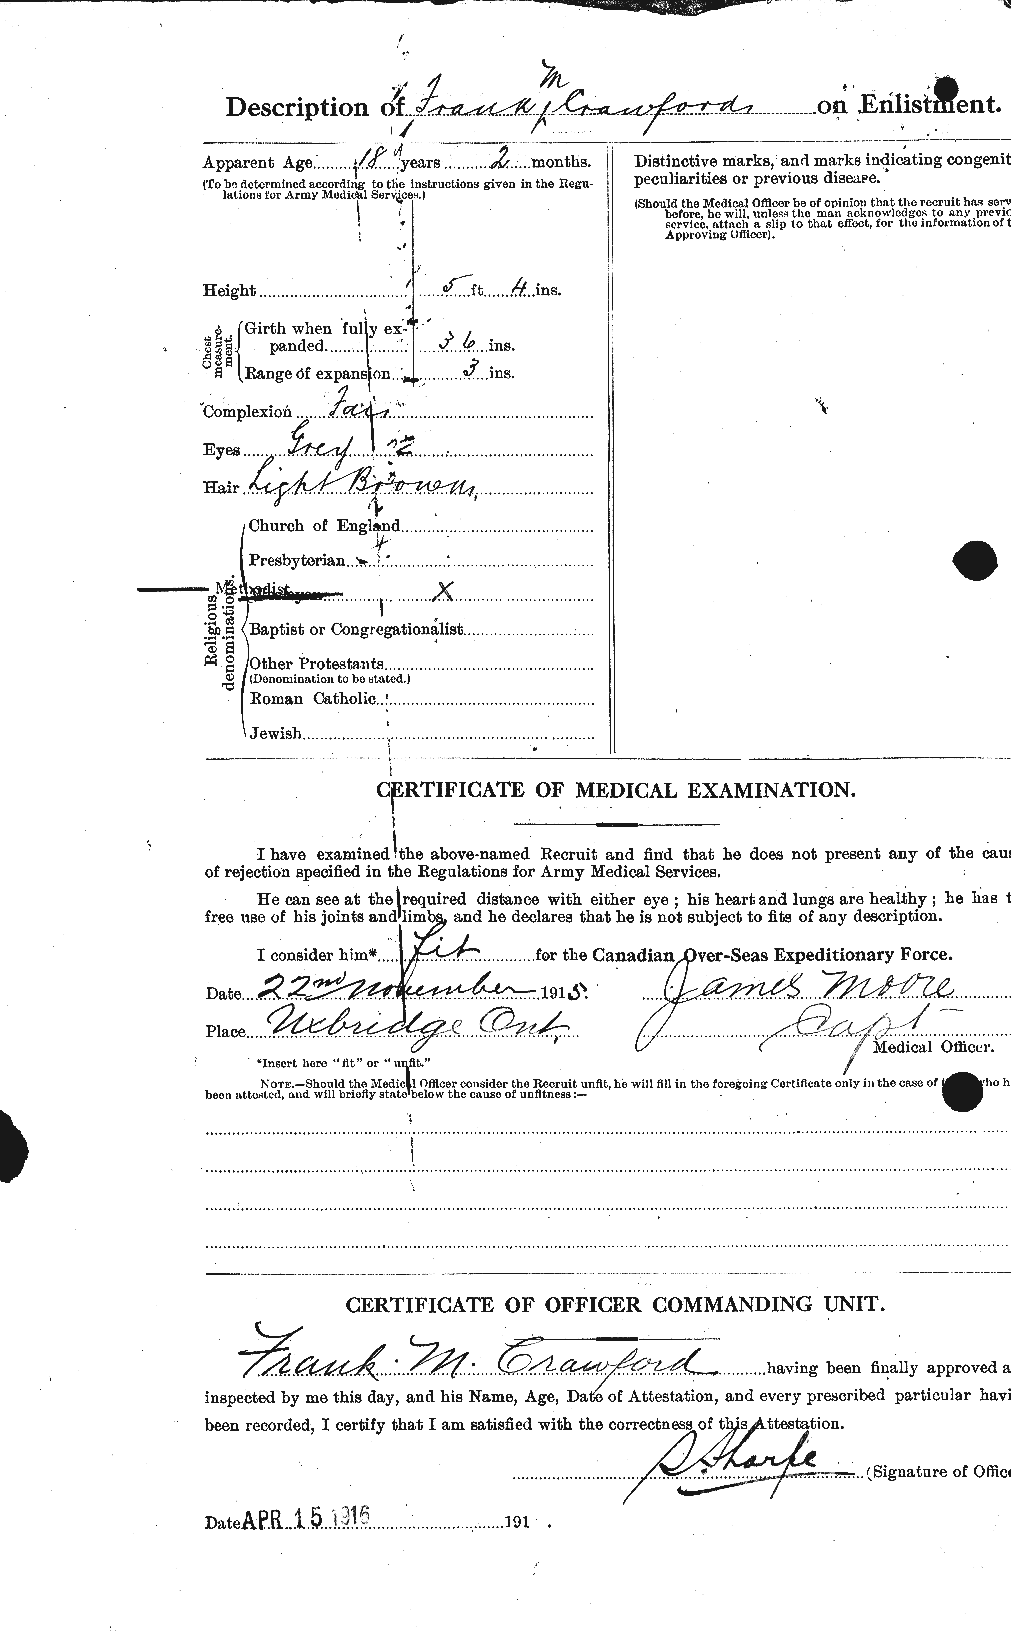 Dossiers du Personnel de la Première Guerre mondiale - CEC 060735b